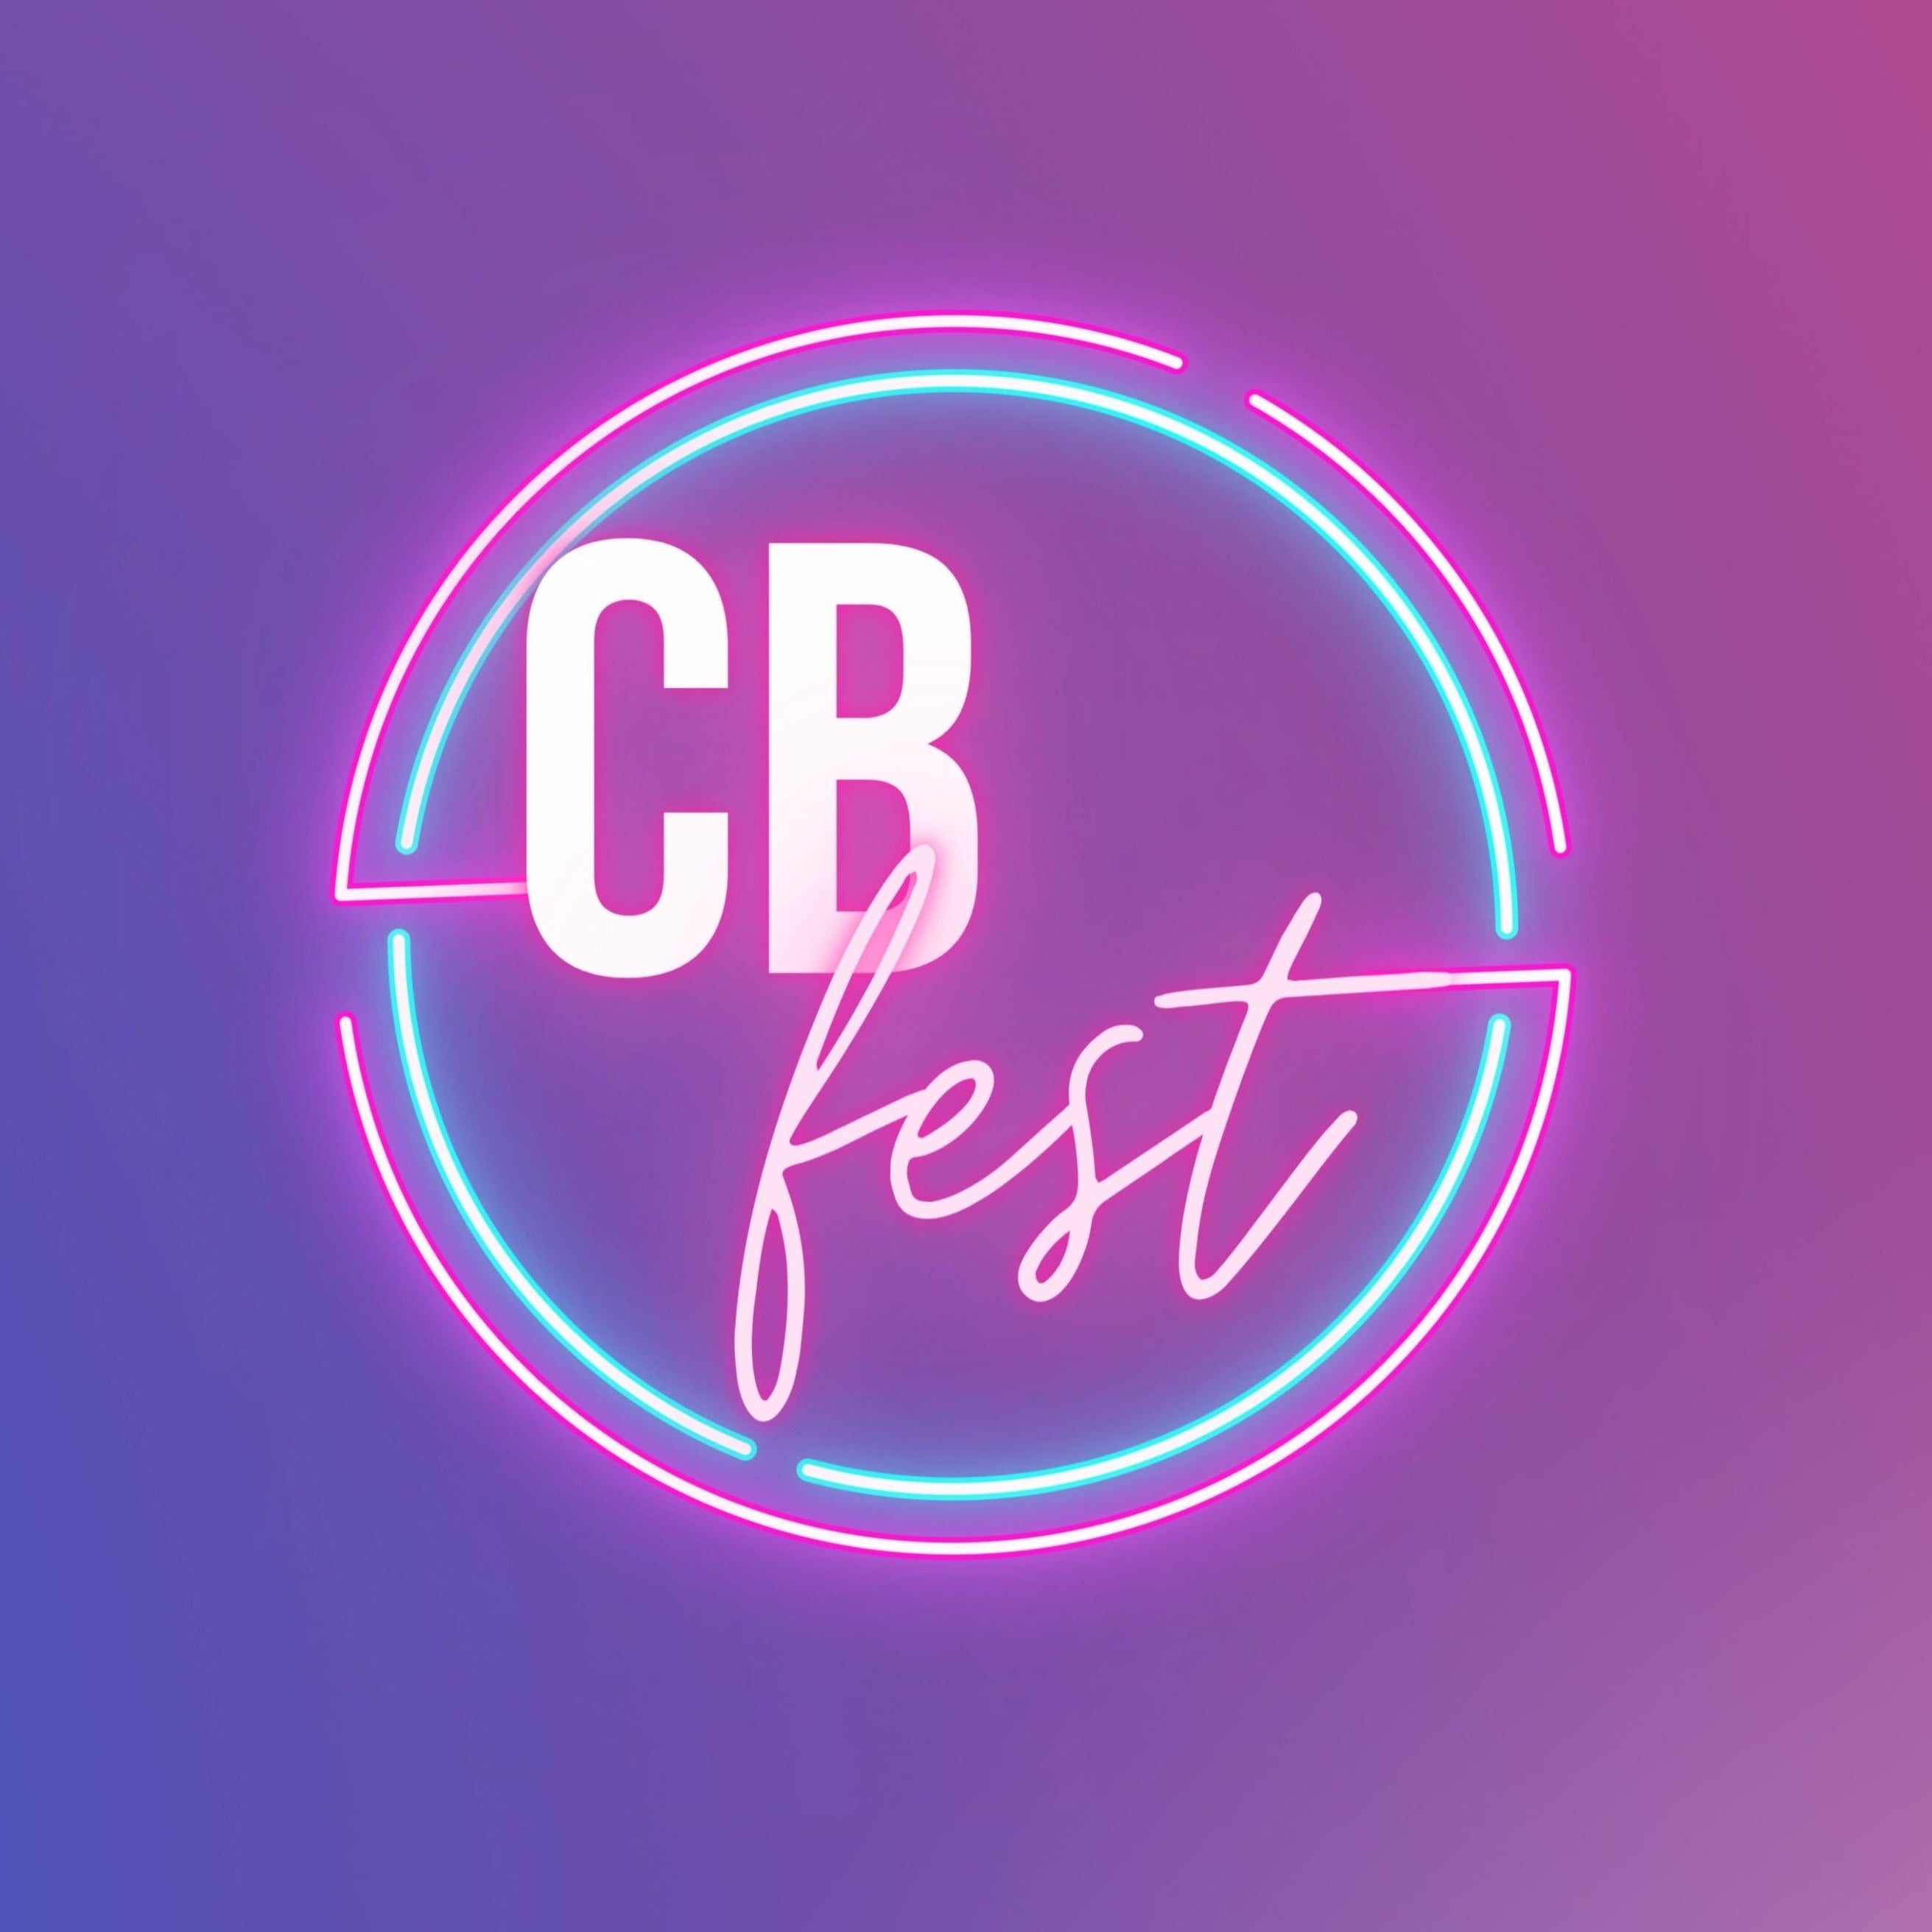 CB Fest